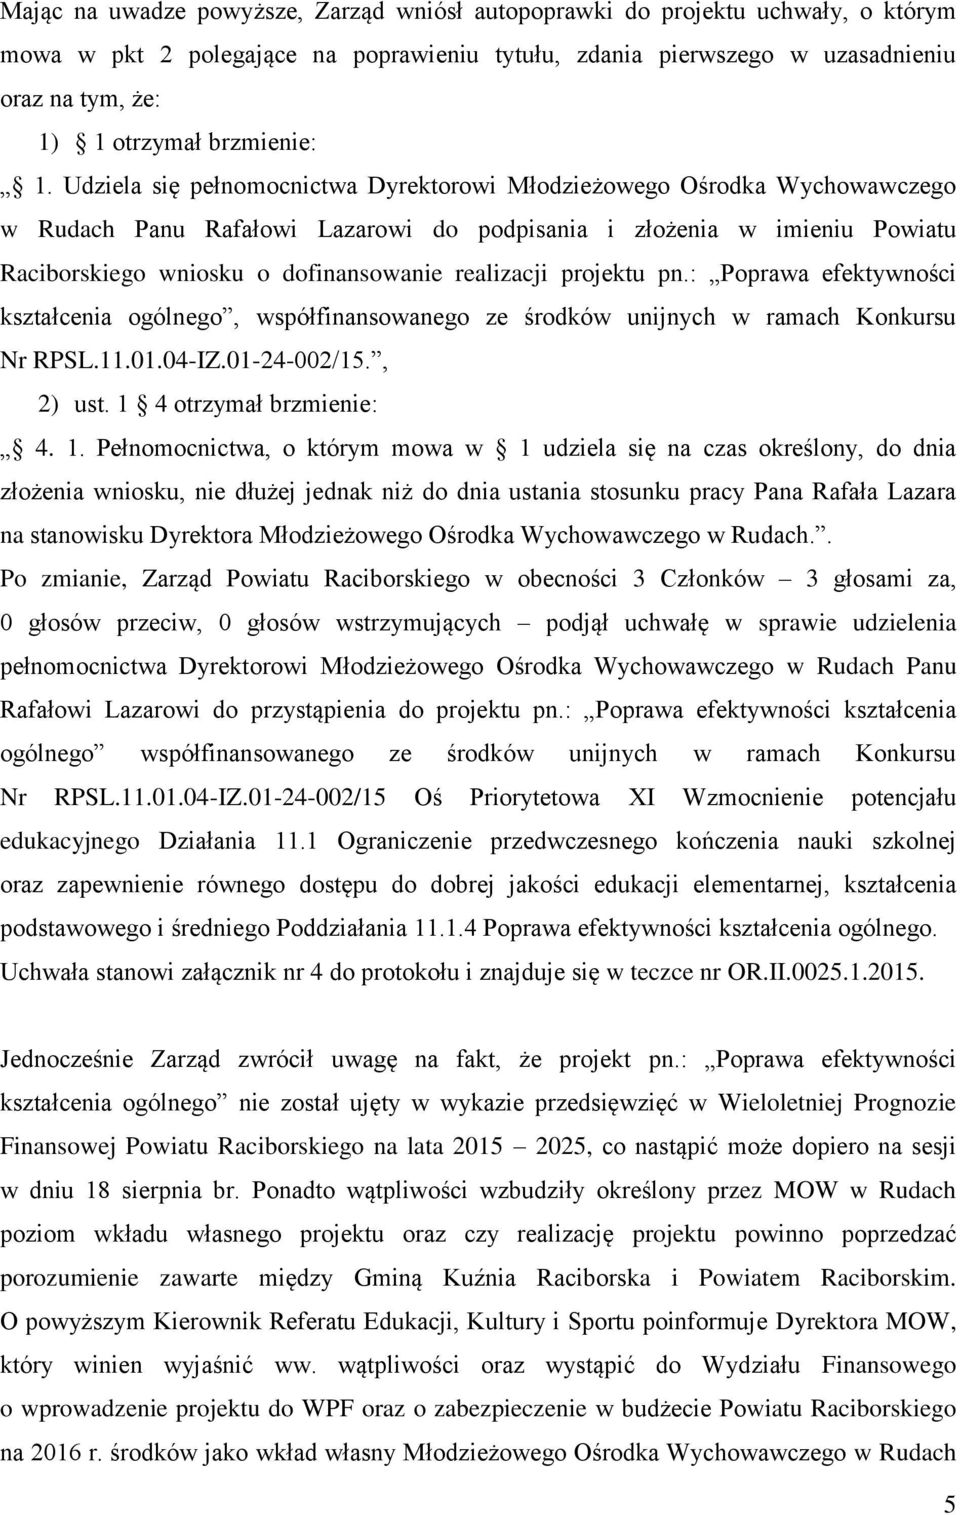 Udziela się pełnomocnictwa Dyrektorowi Młodzieżowego Ośrodka Wychowawczego w Rudach Panu Rafałowi Lazarowi do podpisania i złożenia w imieniu Powiatu Raciborskiego wniosku o dofinansowanie realizacji